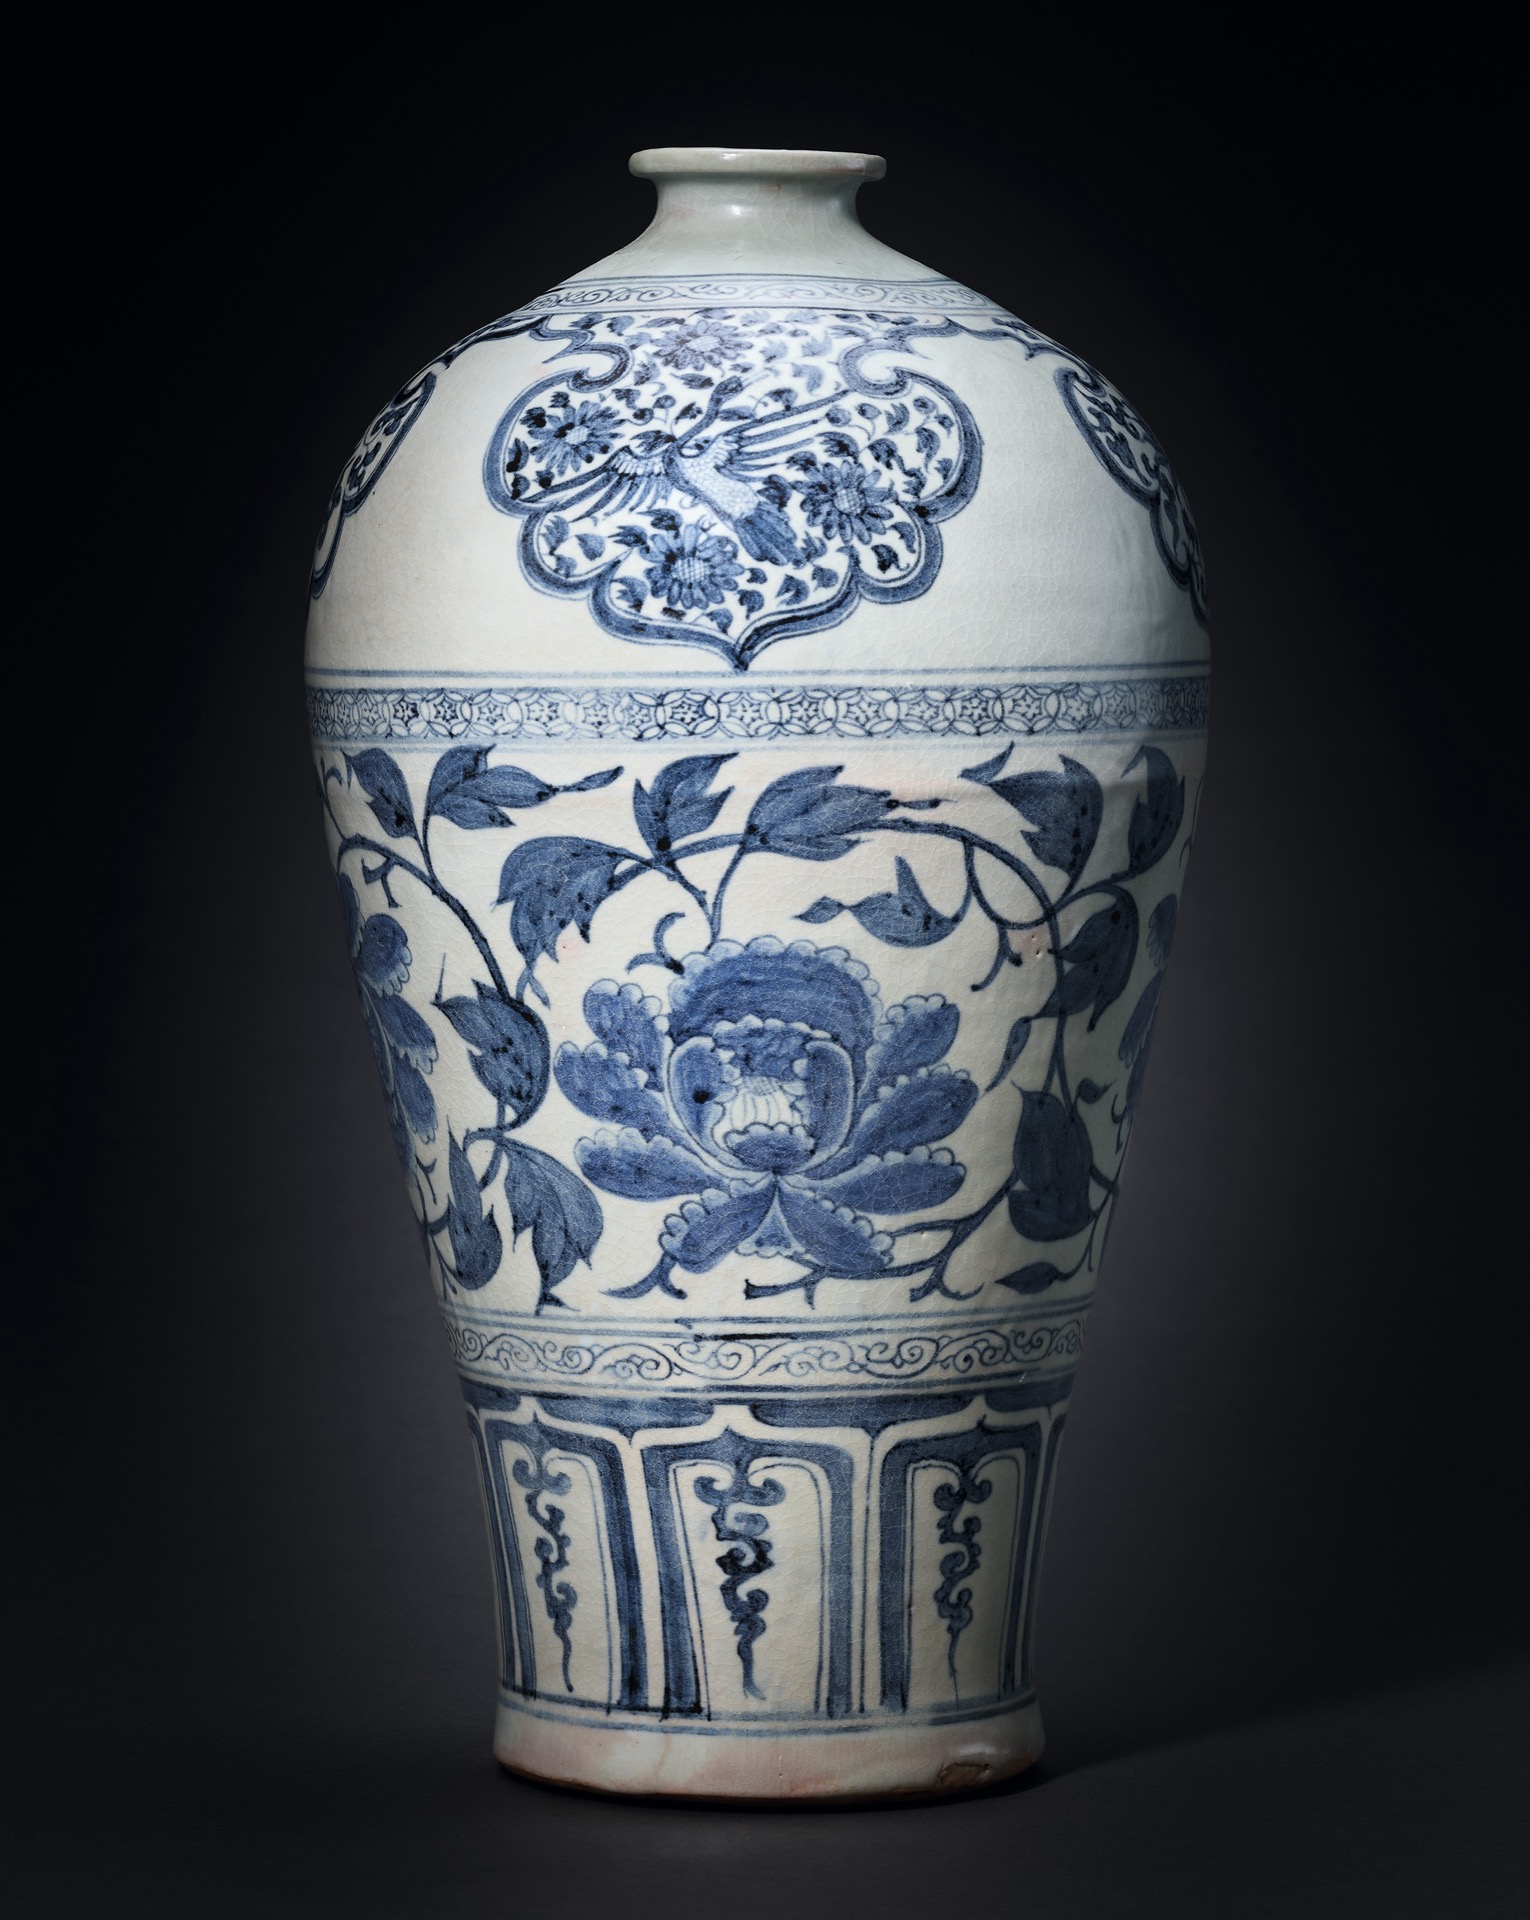 中國陶瓷五千年精品展」中的元青花梅瓶在台北帝圖亮相- Arts & Life 